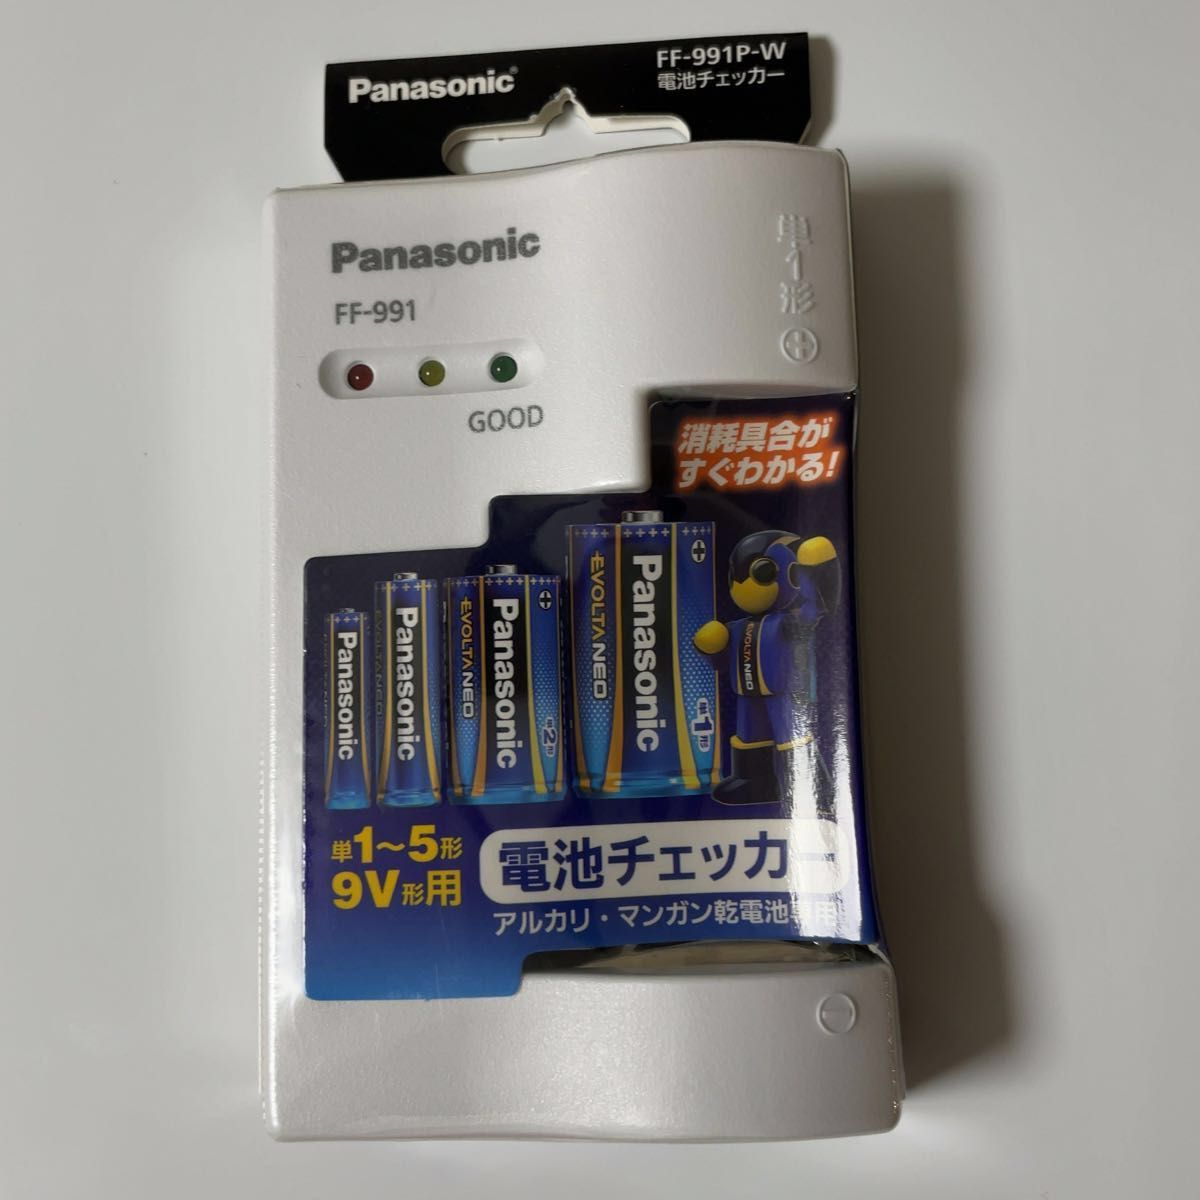 パナソニック 電池チェッカー FF-991P-W 税込定価1,452円 新品未開封です！